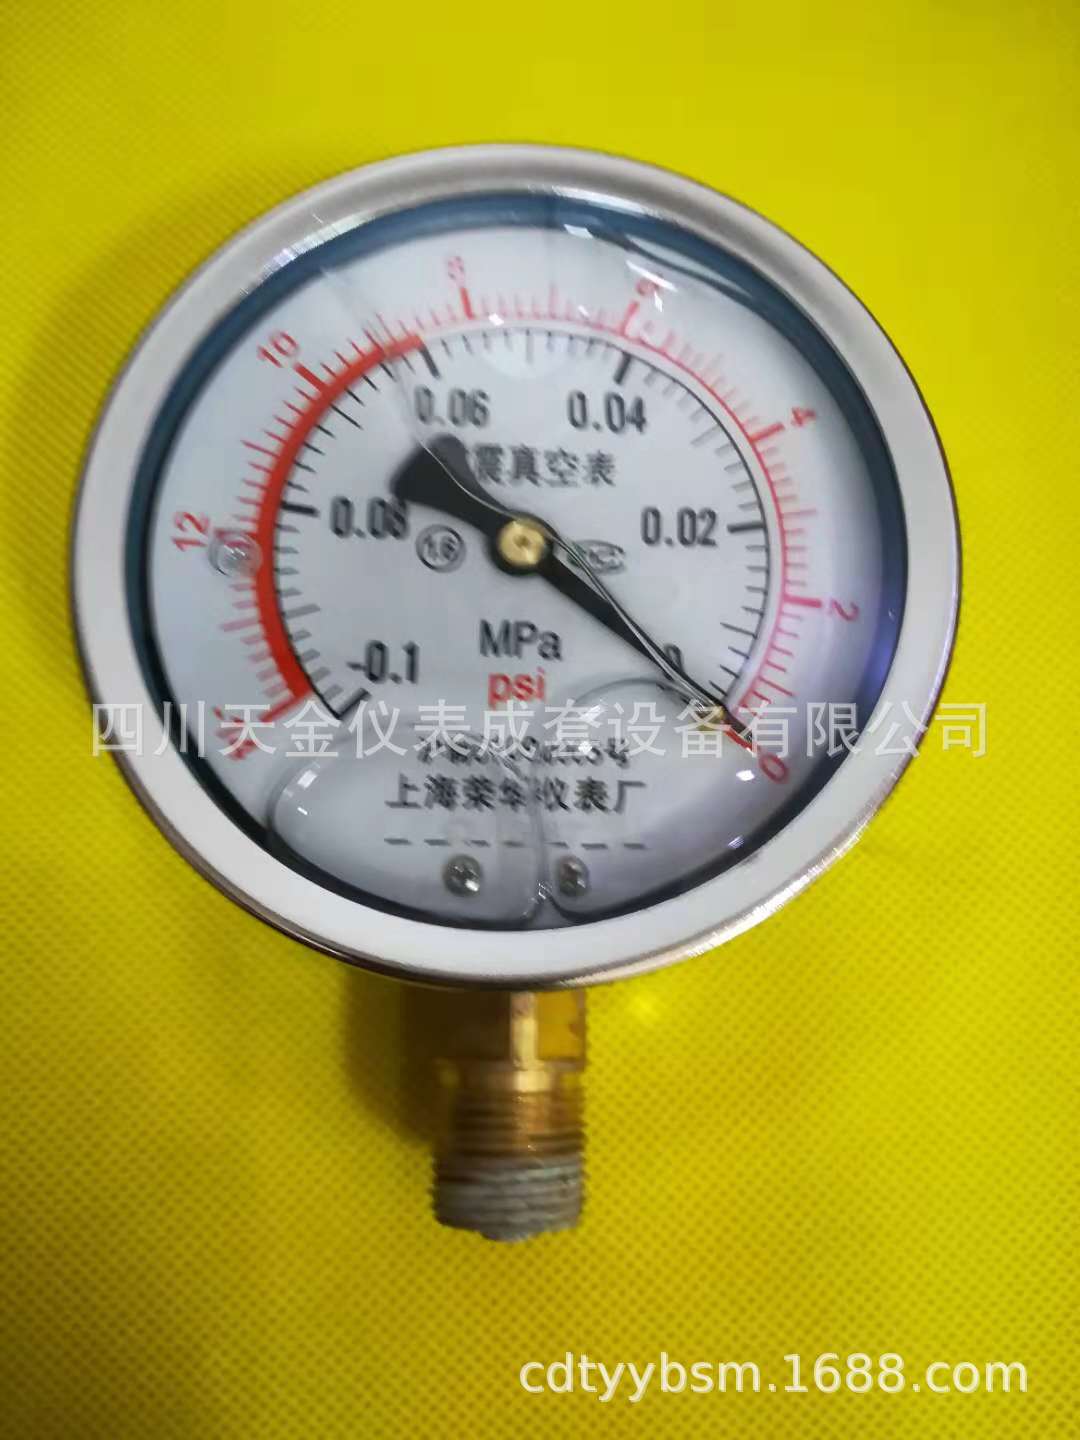 上海荣华仪表厂耐震压力表YN100 -0.1-0MPA